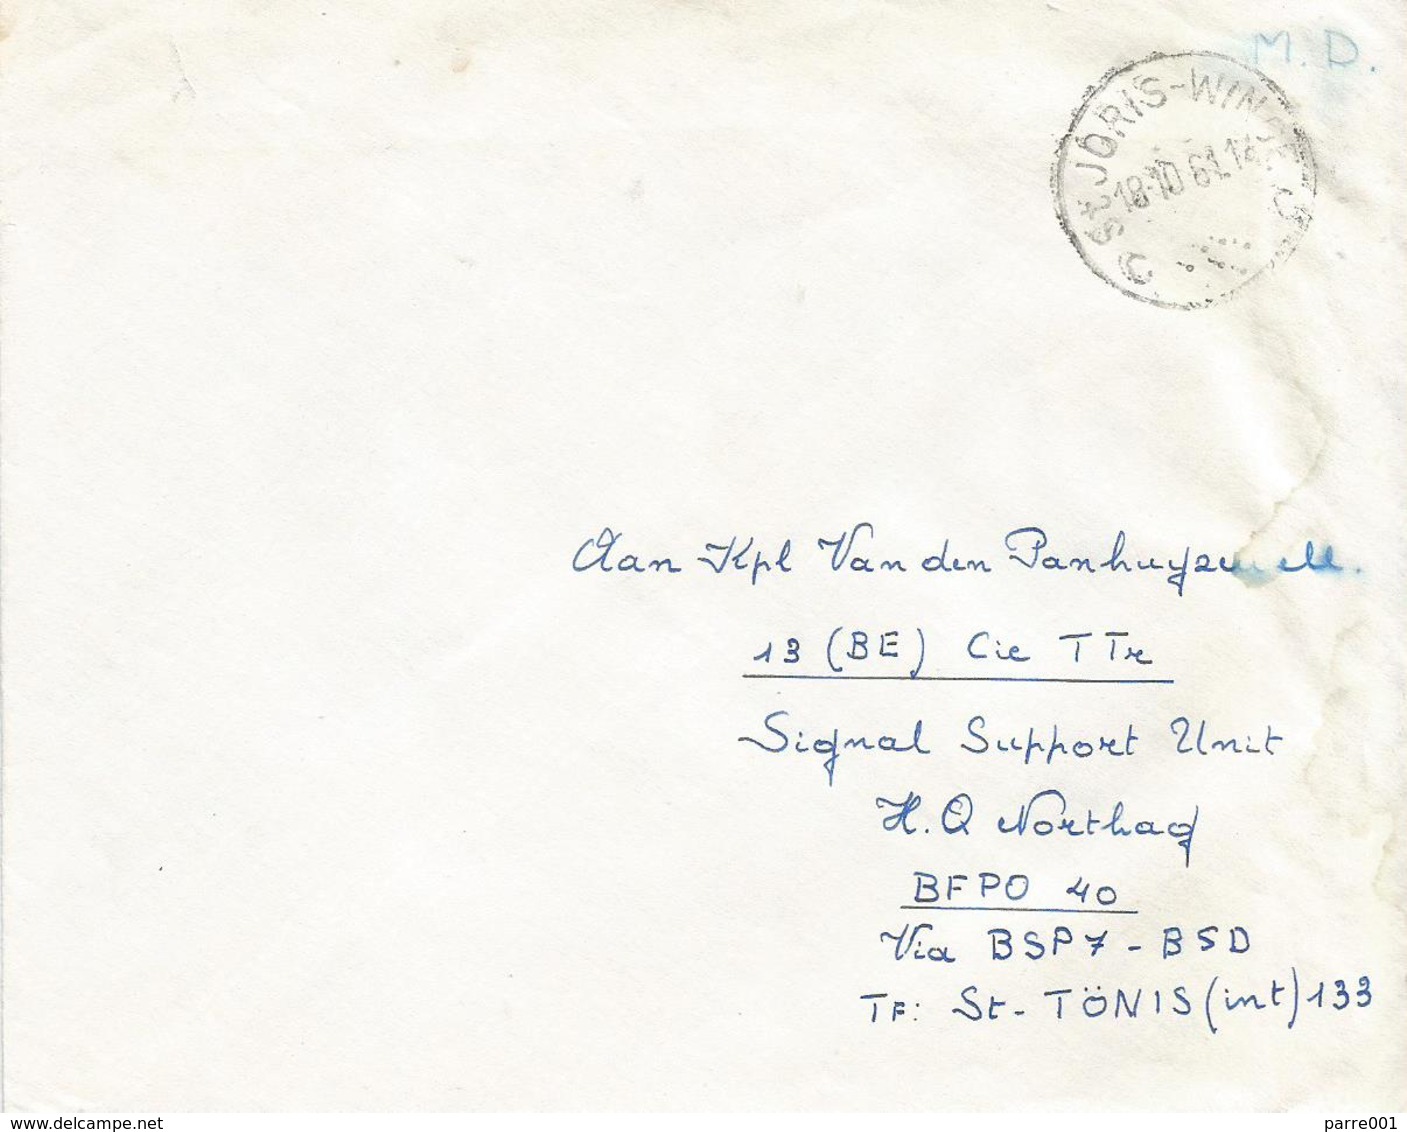 Belgie Belgique 1961 St Joris To Bureaux Postales Secondaires BSP7 Weiden Military Unfranked Cover - Armeestempel